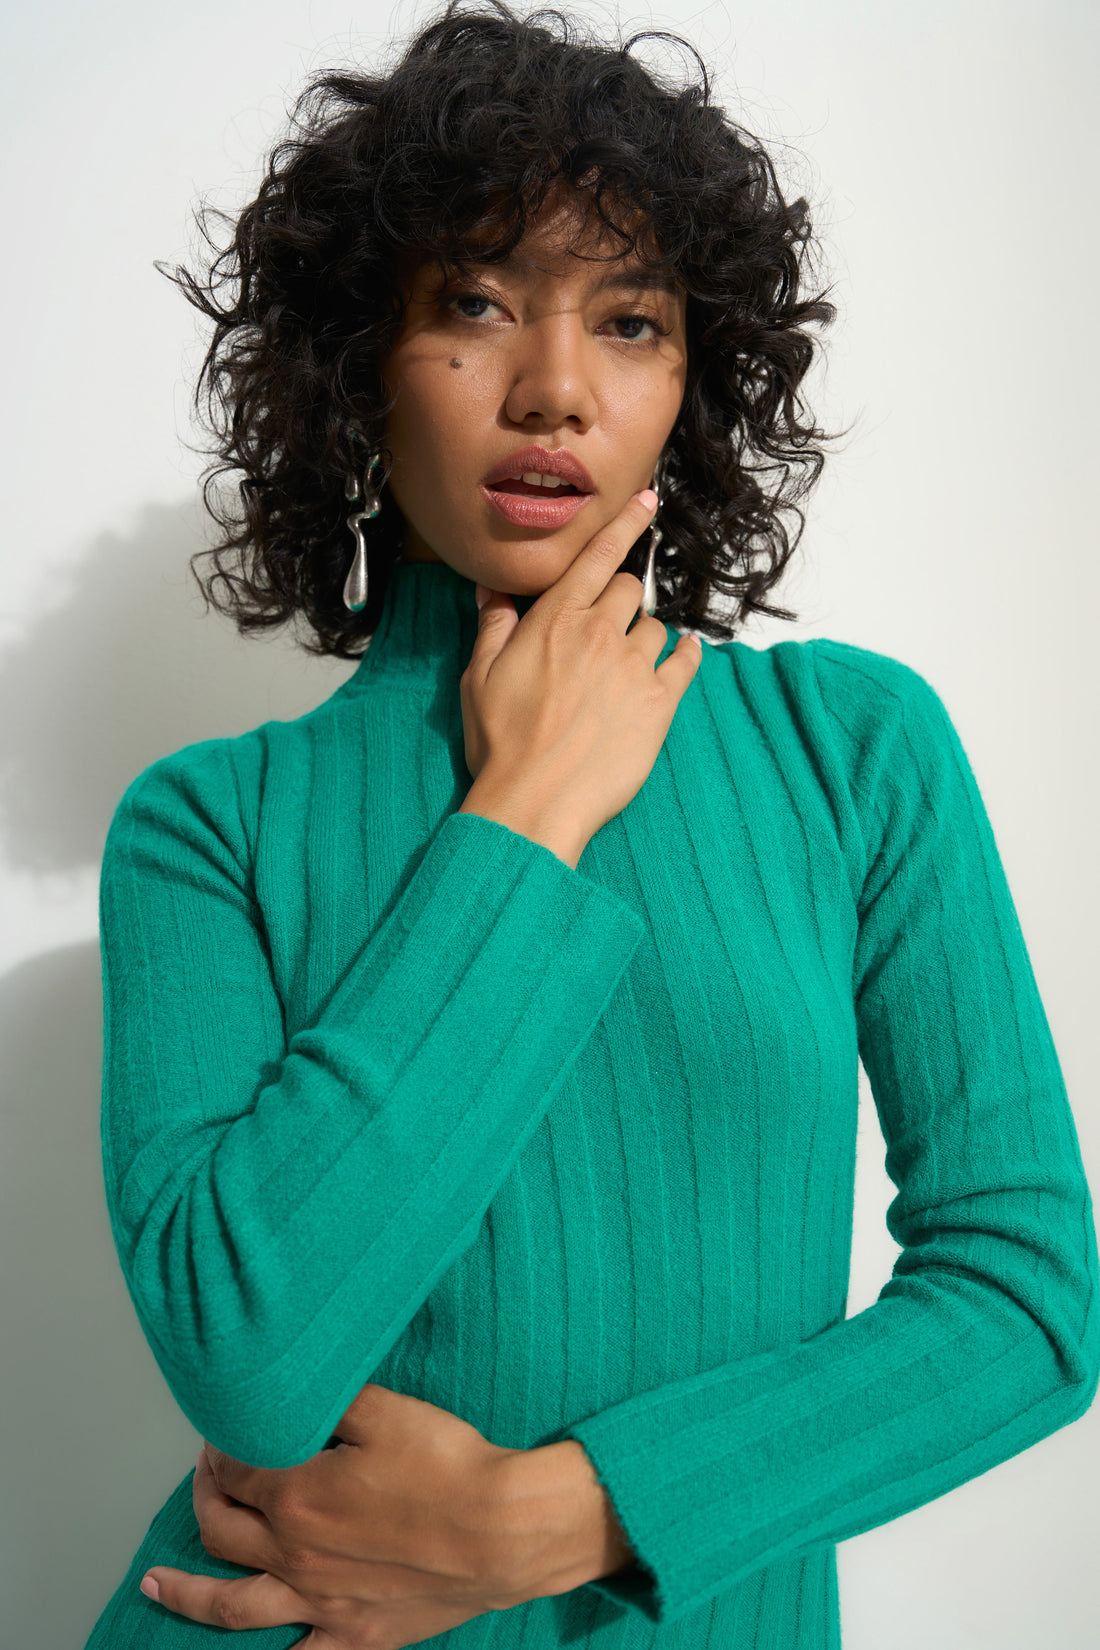 Pia Sweater Dress - Mint